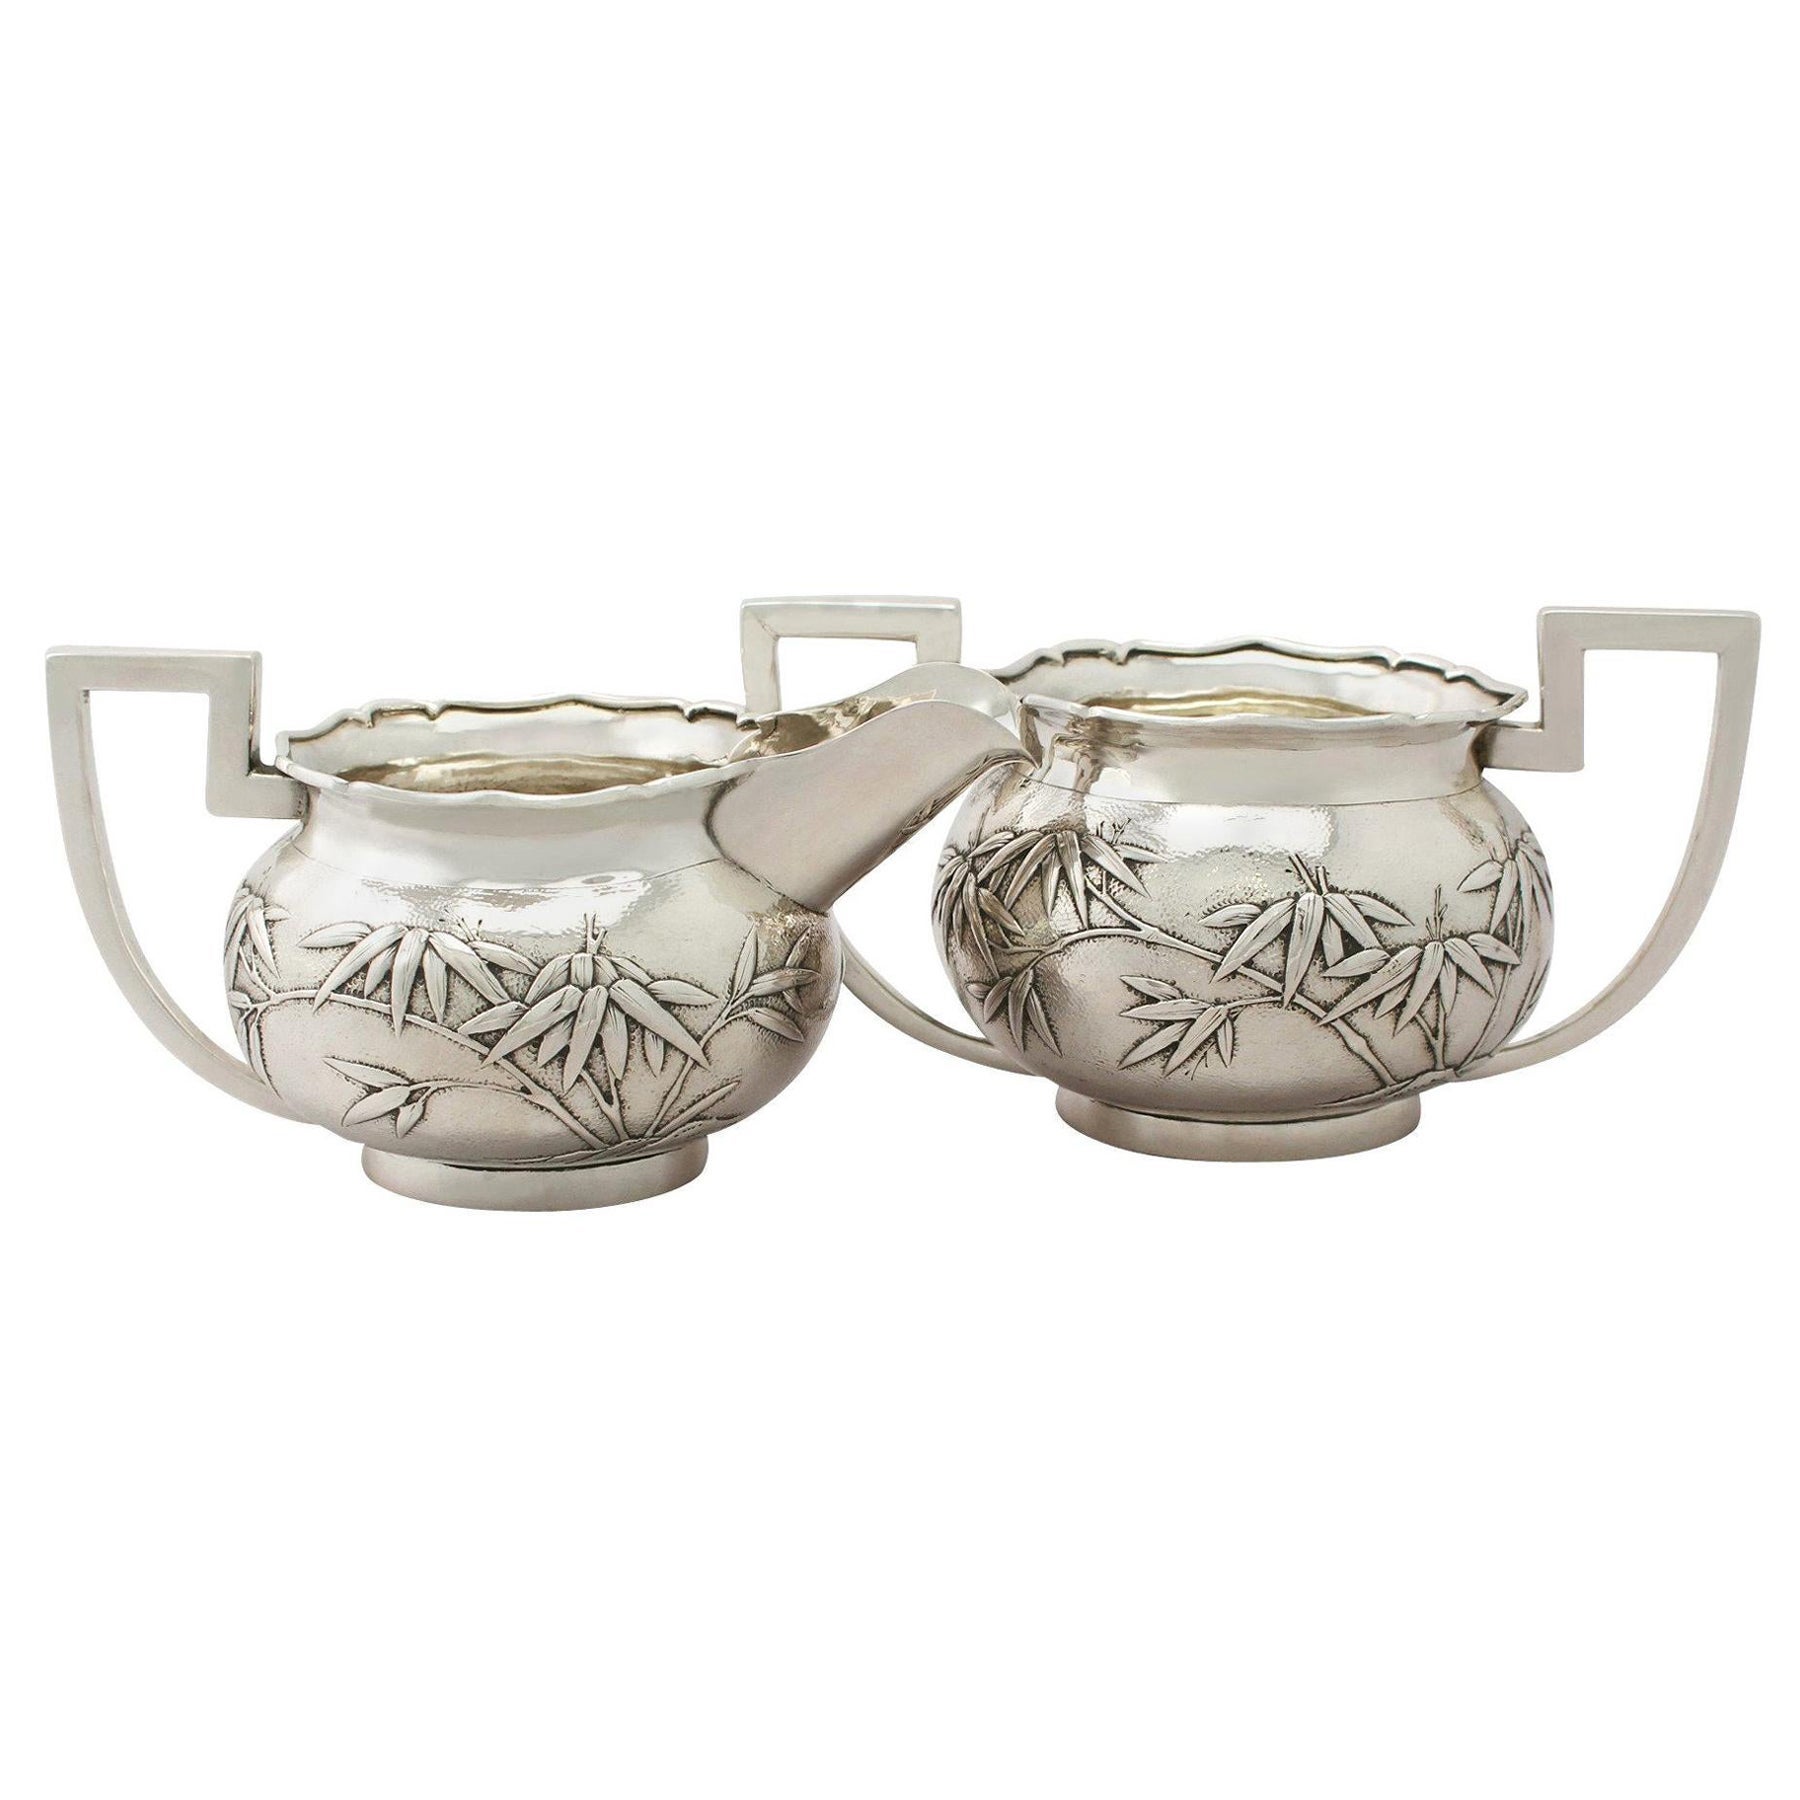 1900s Chinese Export Silver Cream Jug / Creamer and Sugar Bowl